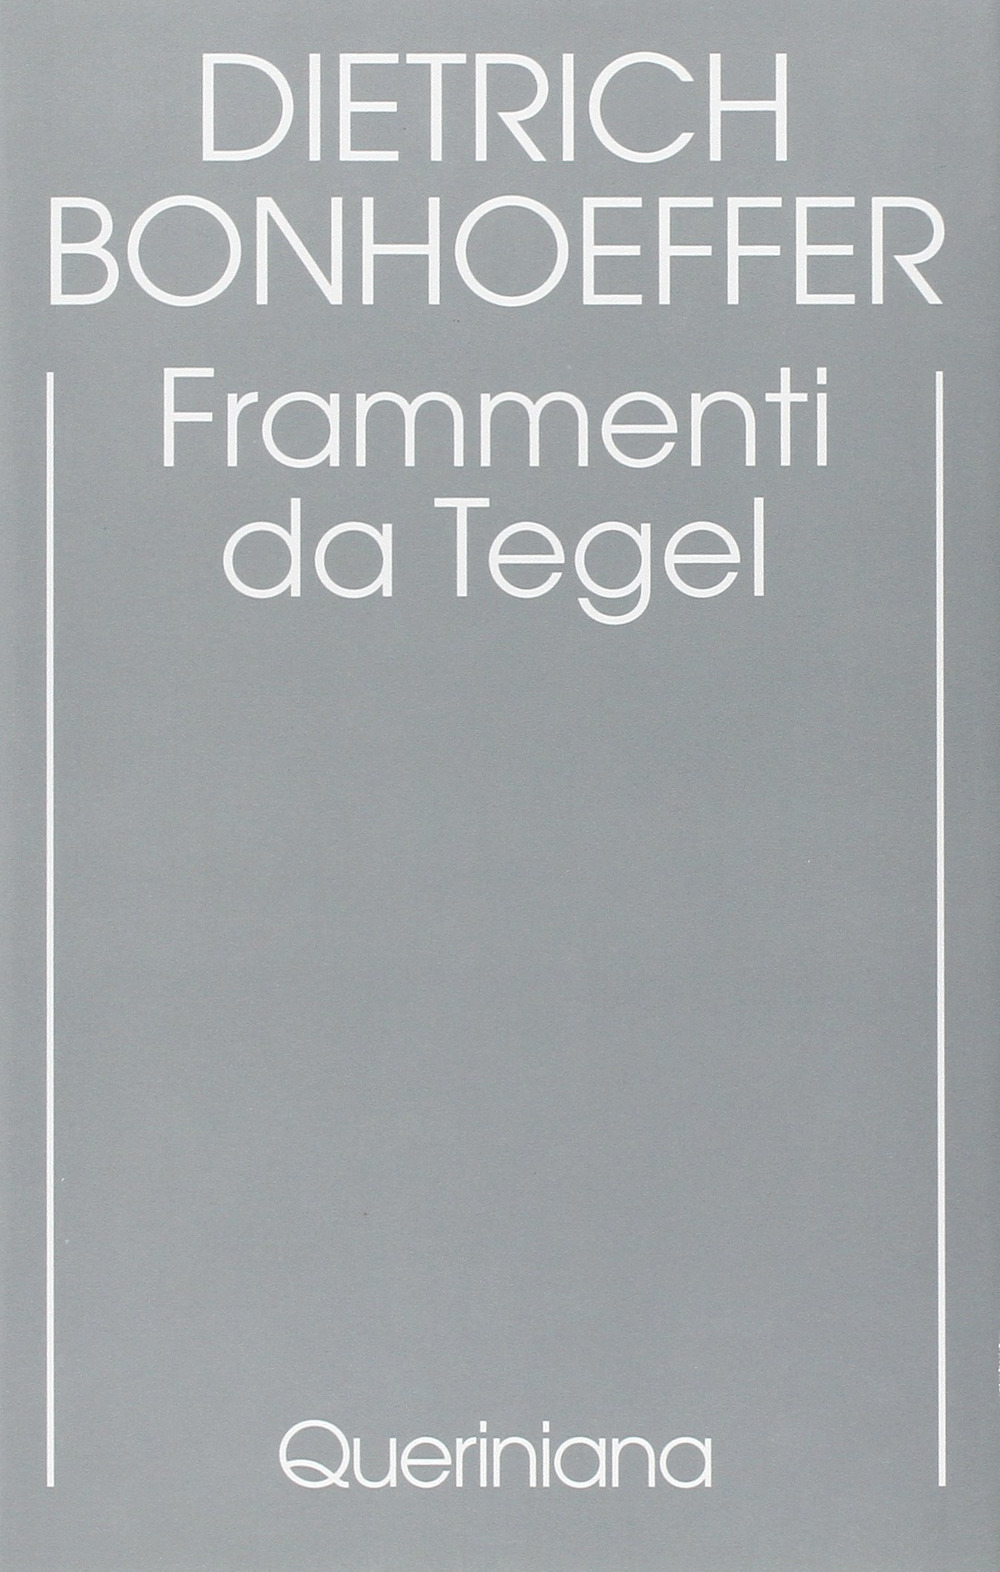 Edizione critica delle opere di D. Bonhoeffer. Ediz. critica. Vol. 7: Frammenti da Tegel